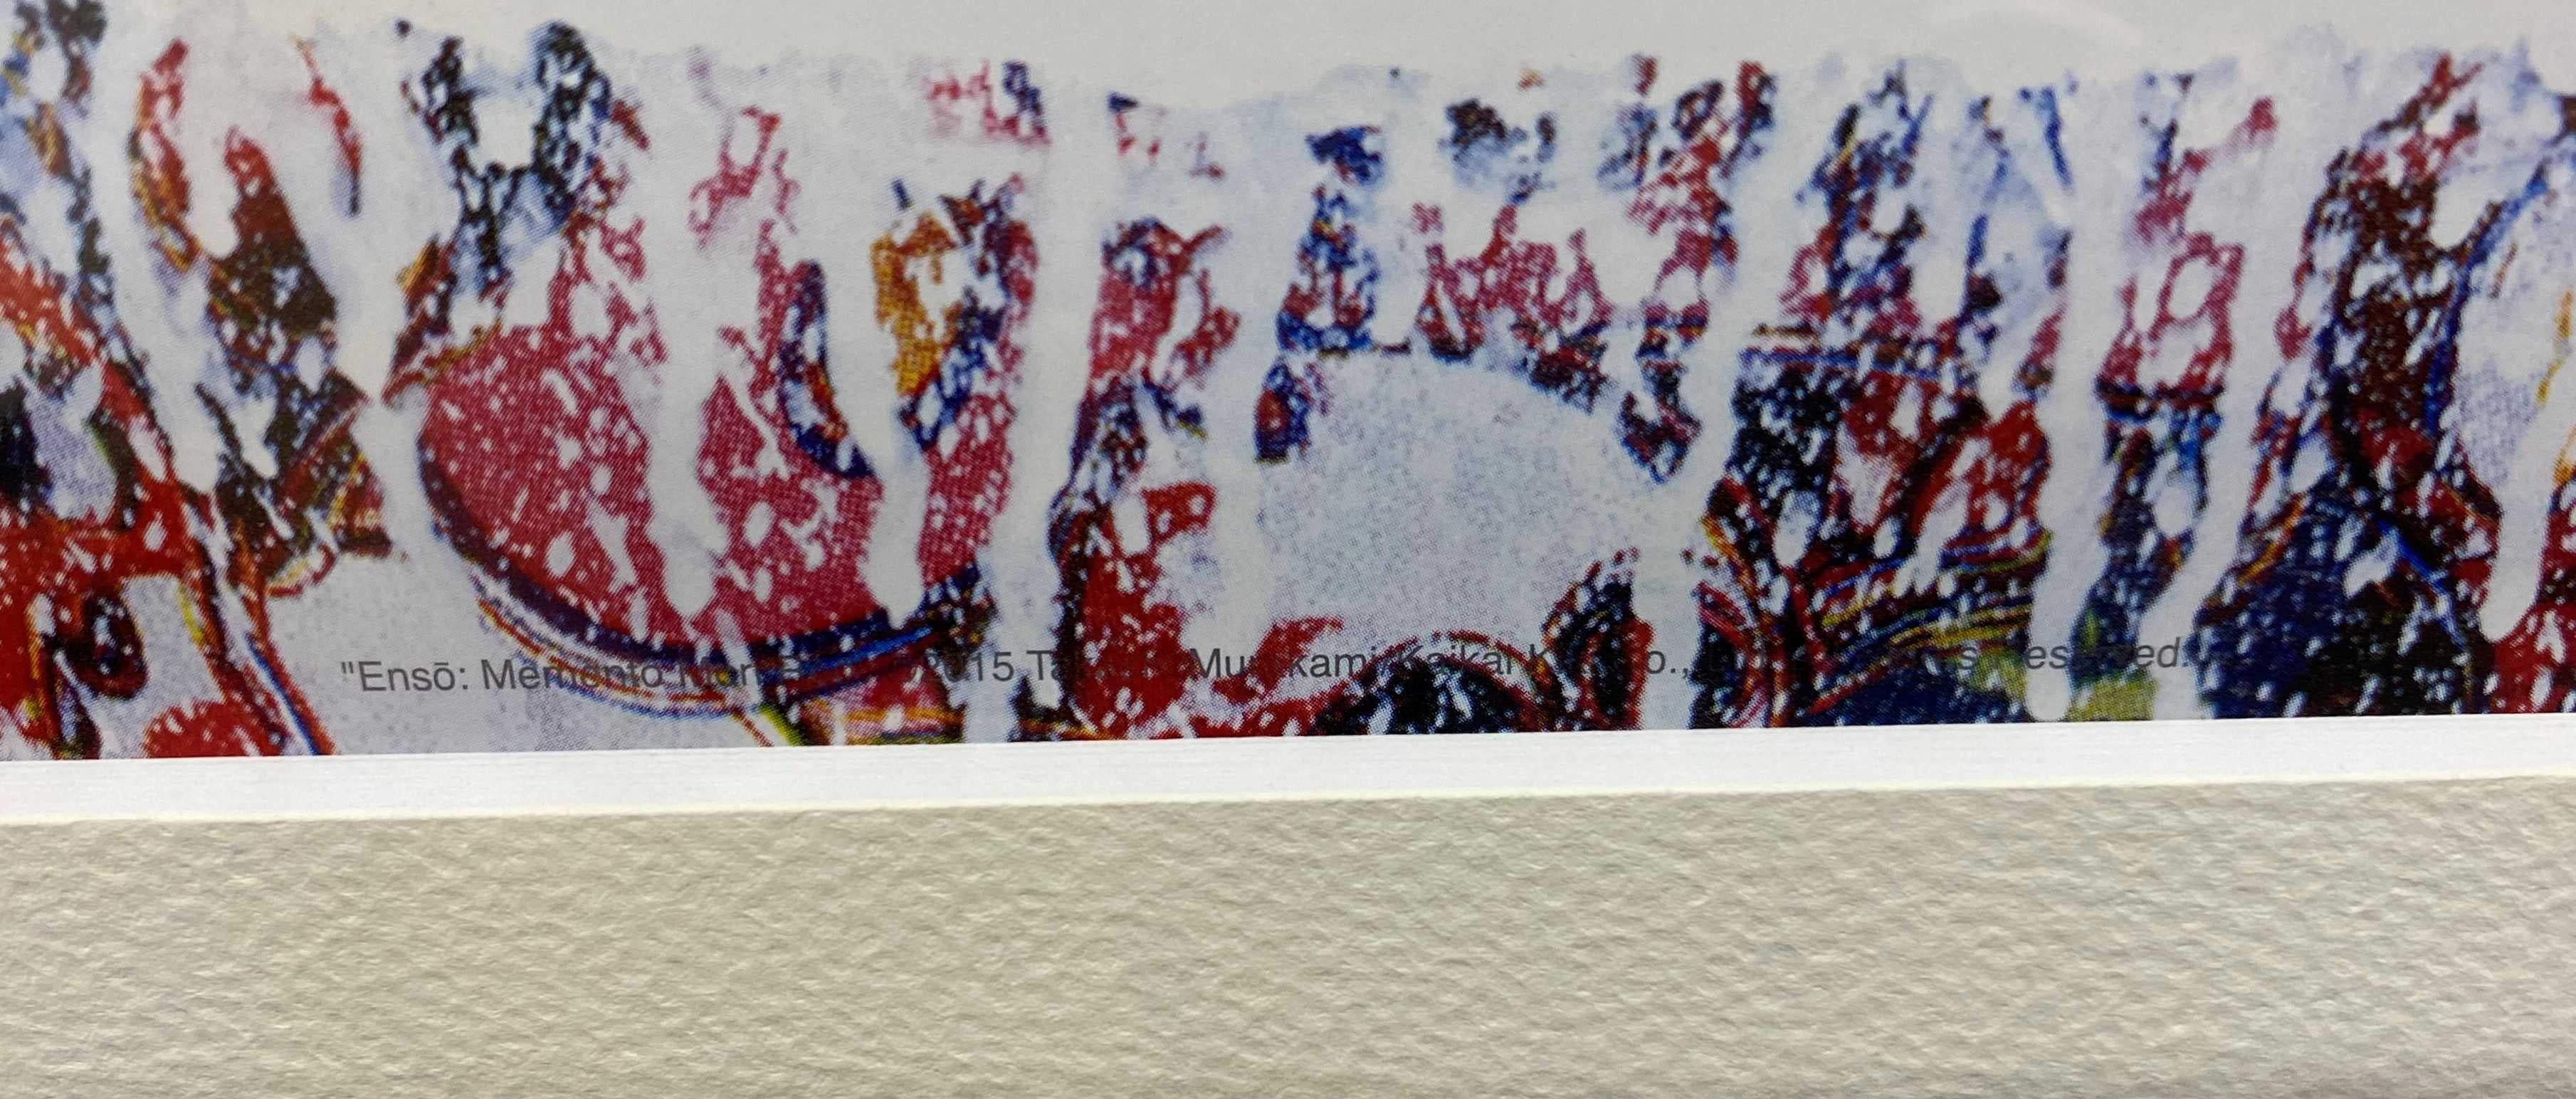 Ensō: Memento Mori Red (2016) Limitierte Auflage (Druck) von Murakami handsigniert (Pop-Art), Print, von Takashi Murakami